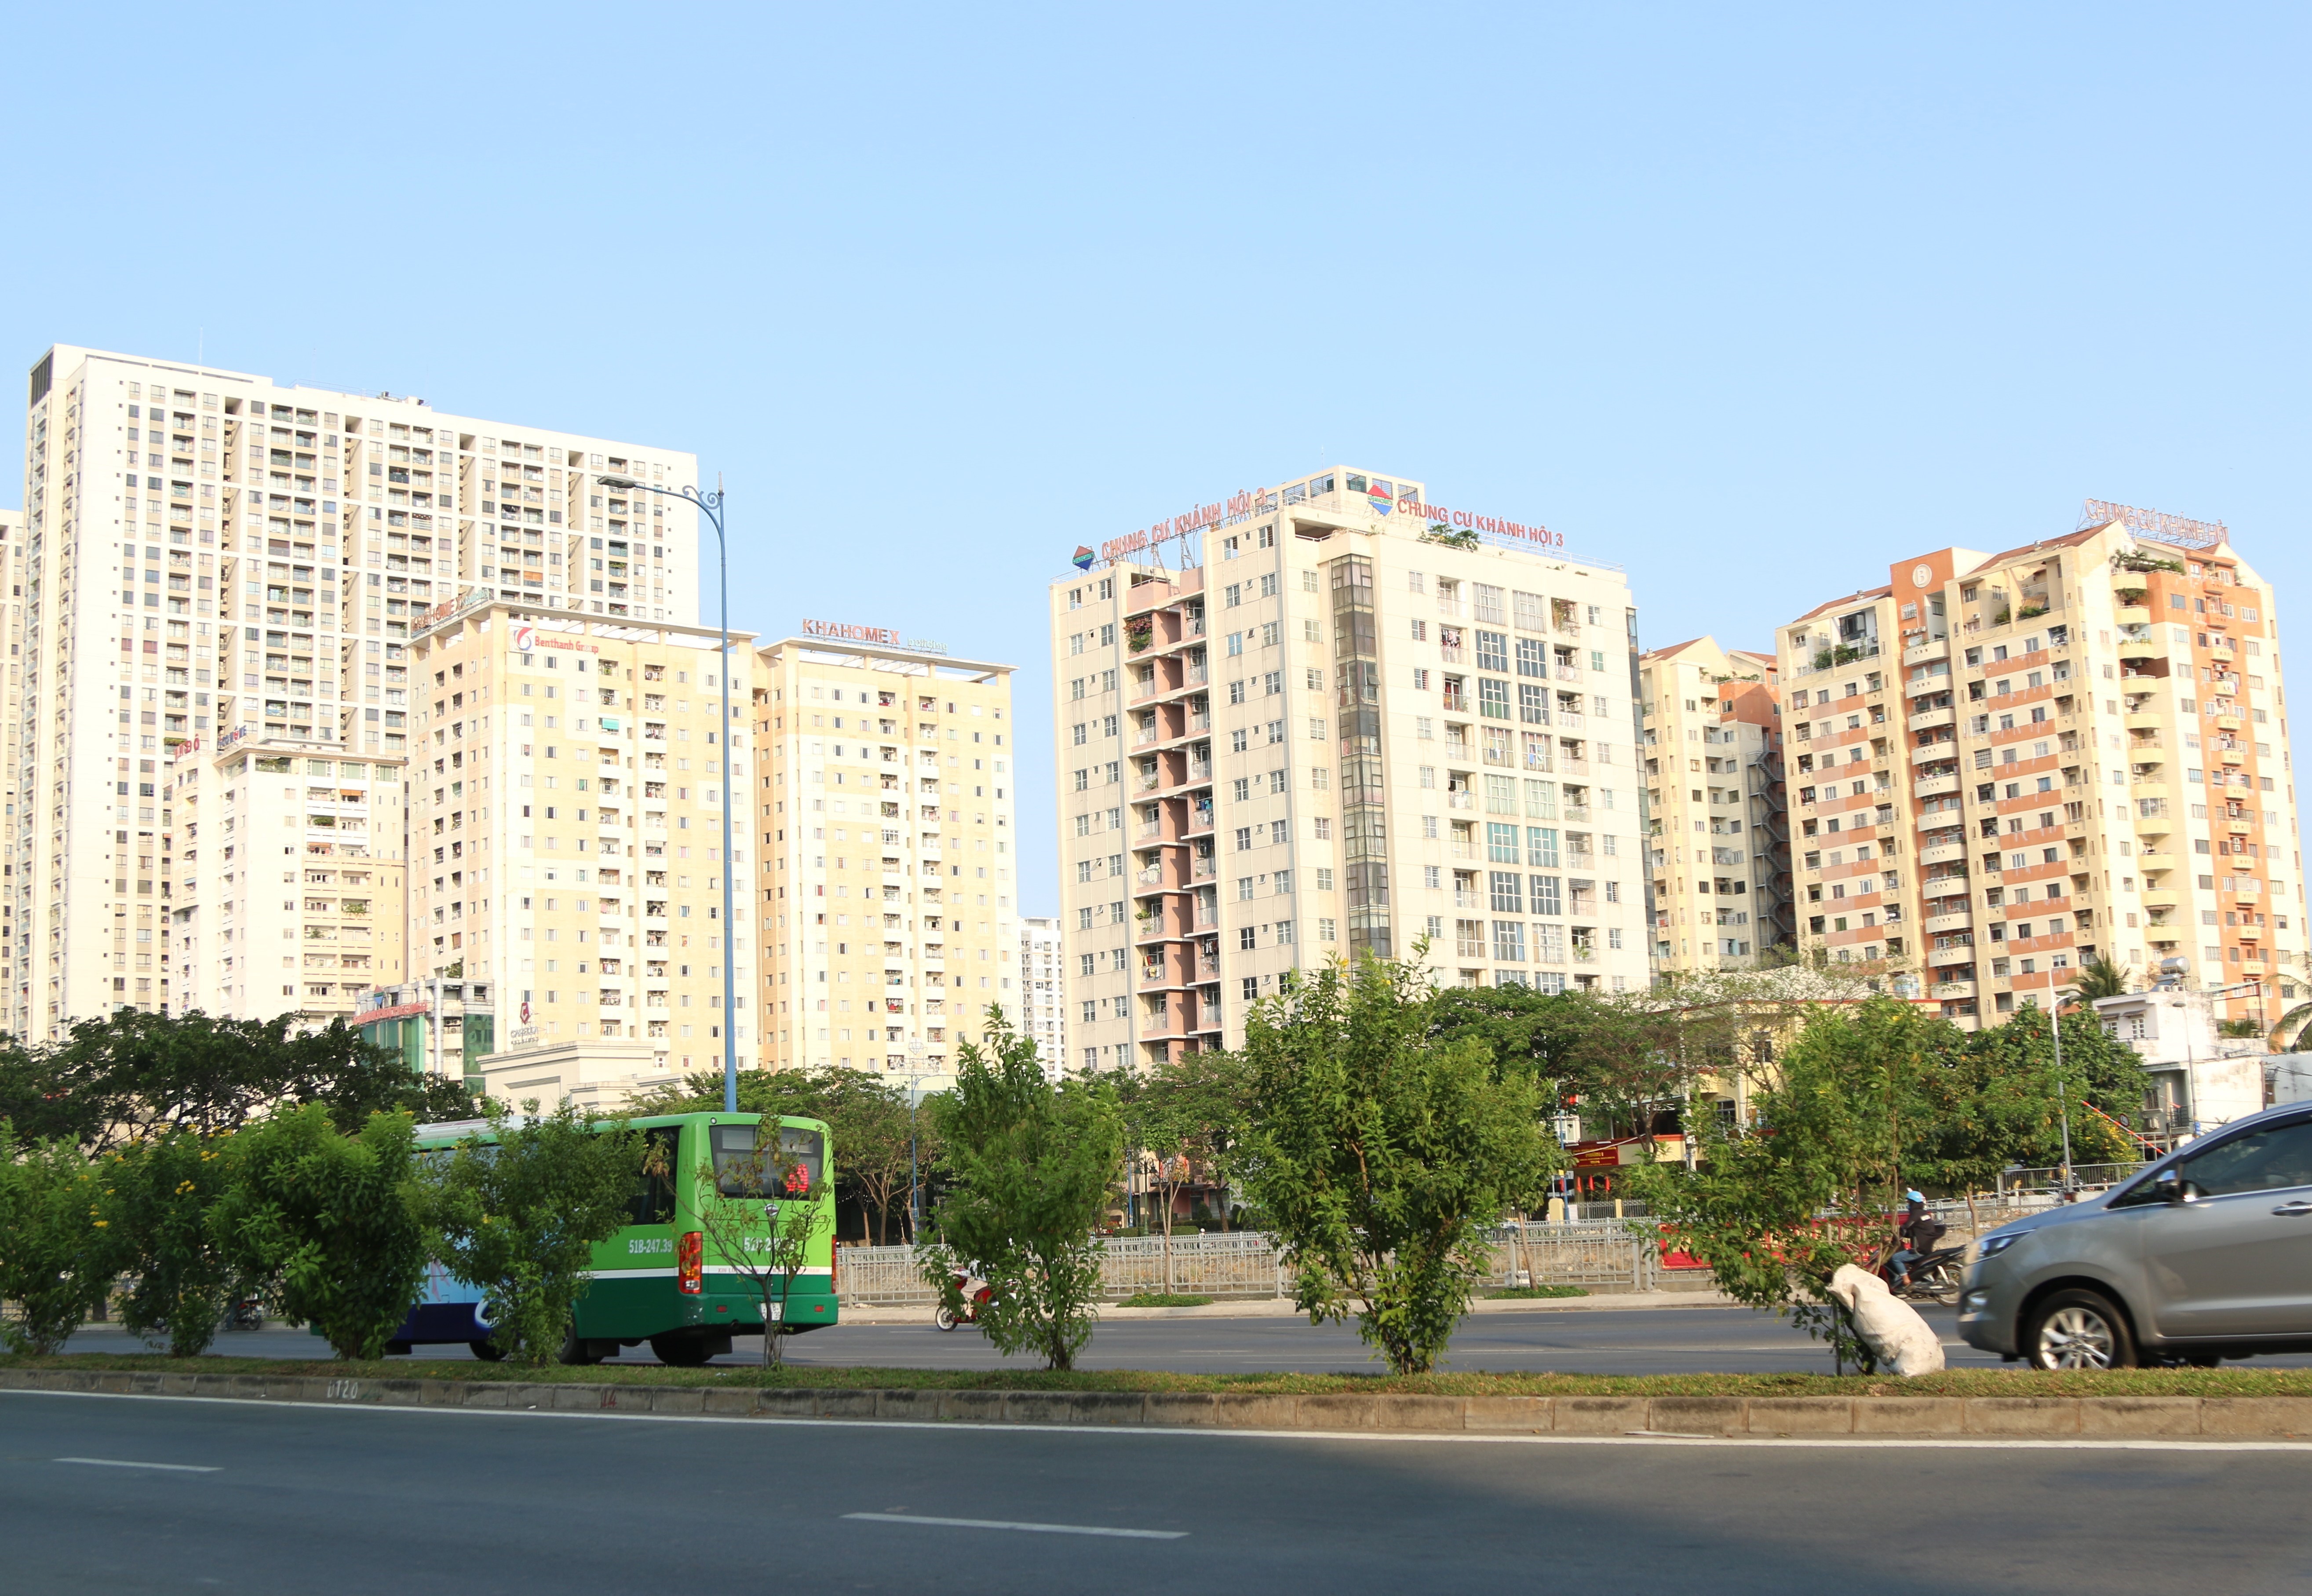 Dự án chung cư Khánh Hội 2 có nguồn gốc đất công, từng xảy ra vi phạm trật tự xây dựng. (Ảnh: Trần Xuân Tình/TTXVN)